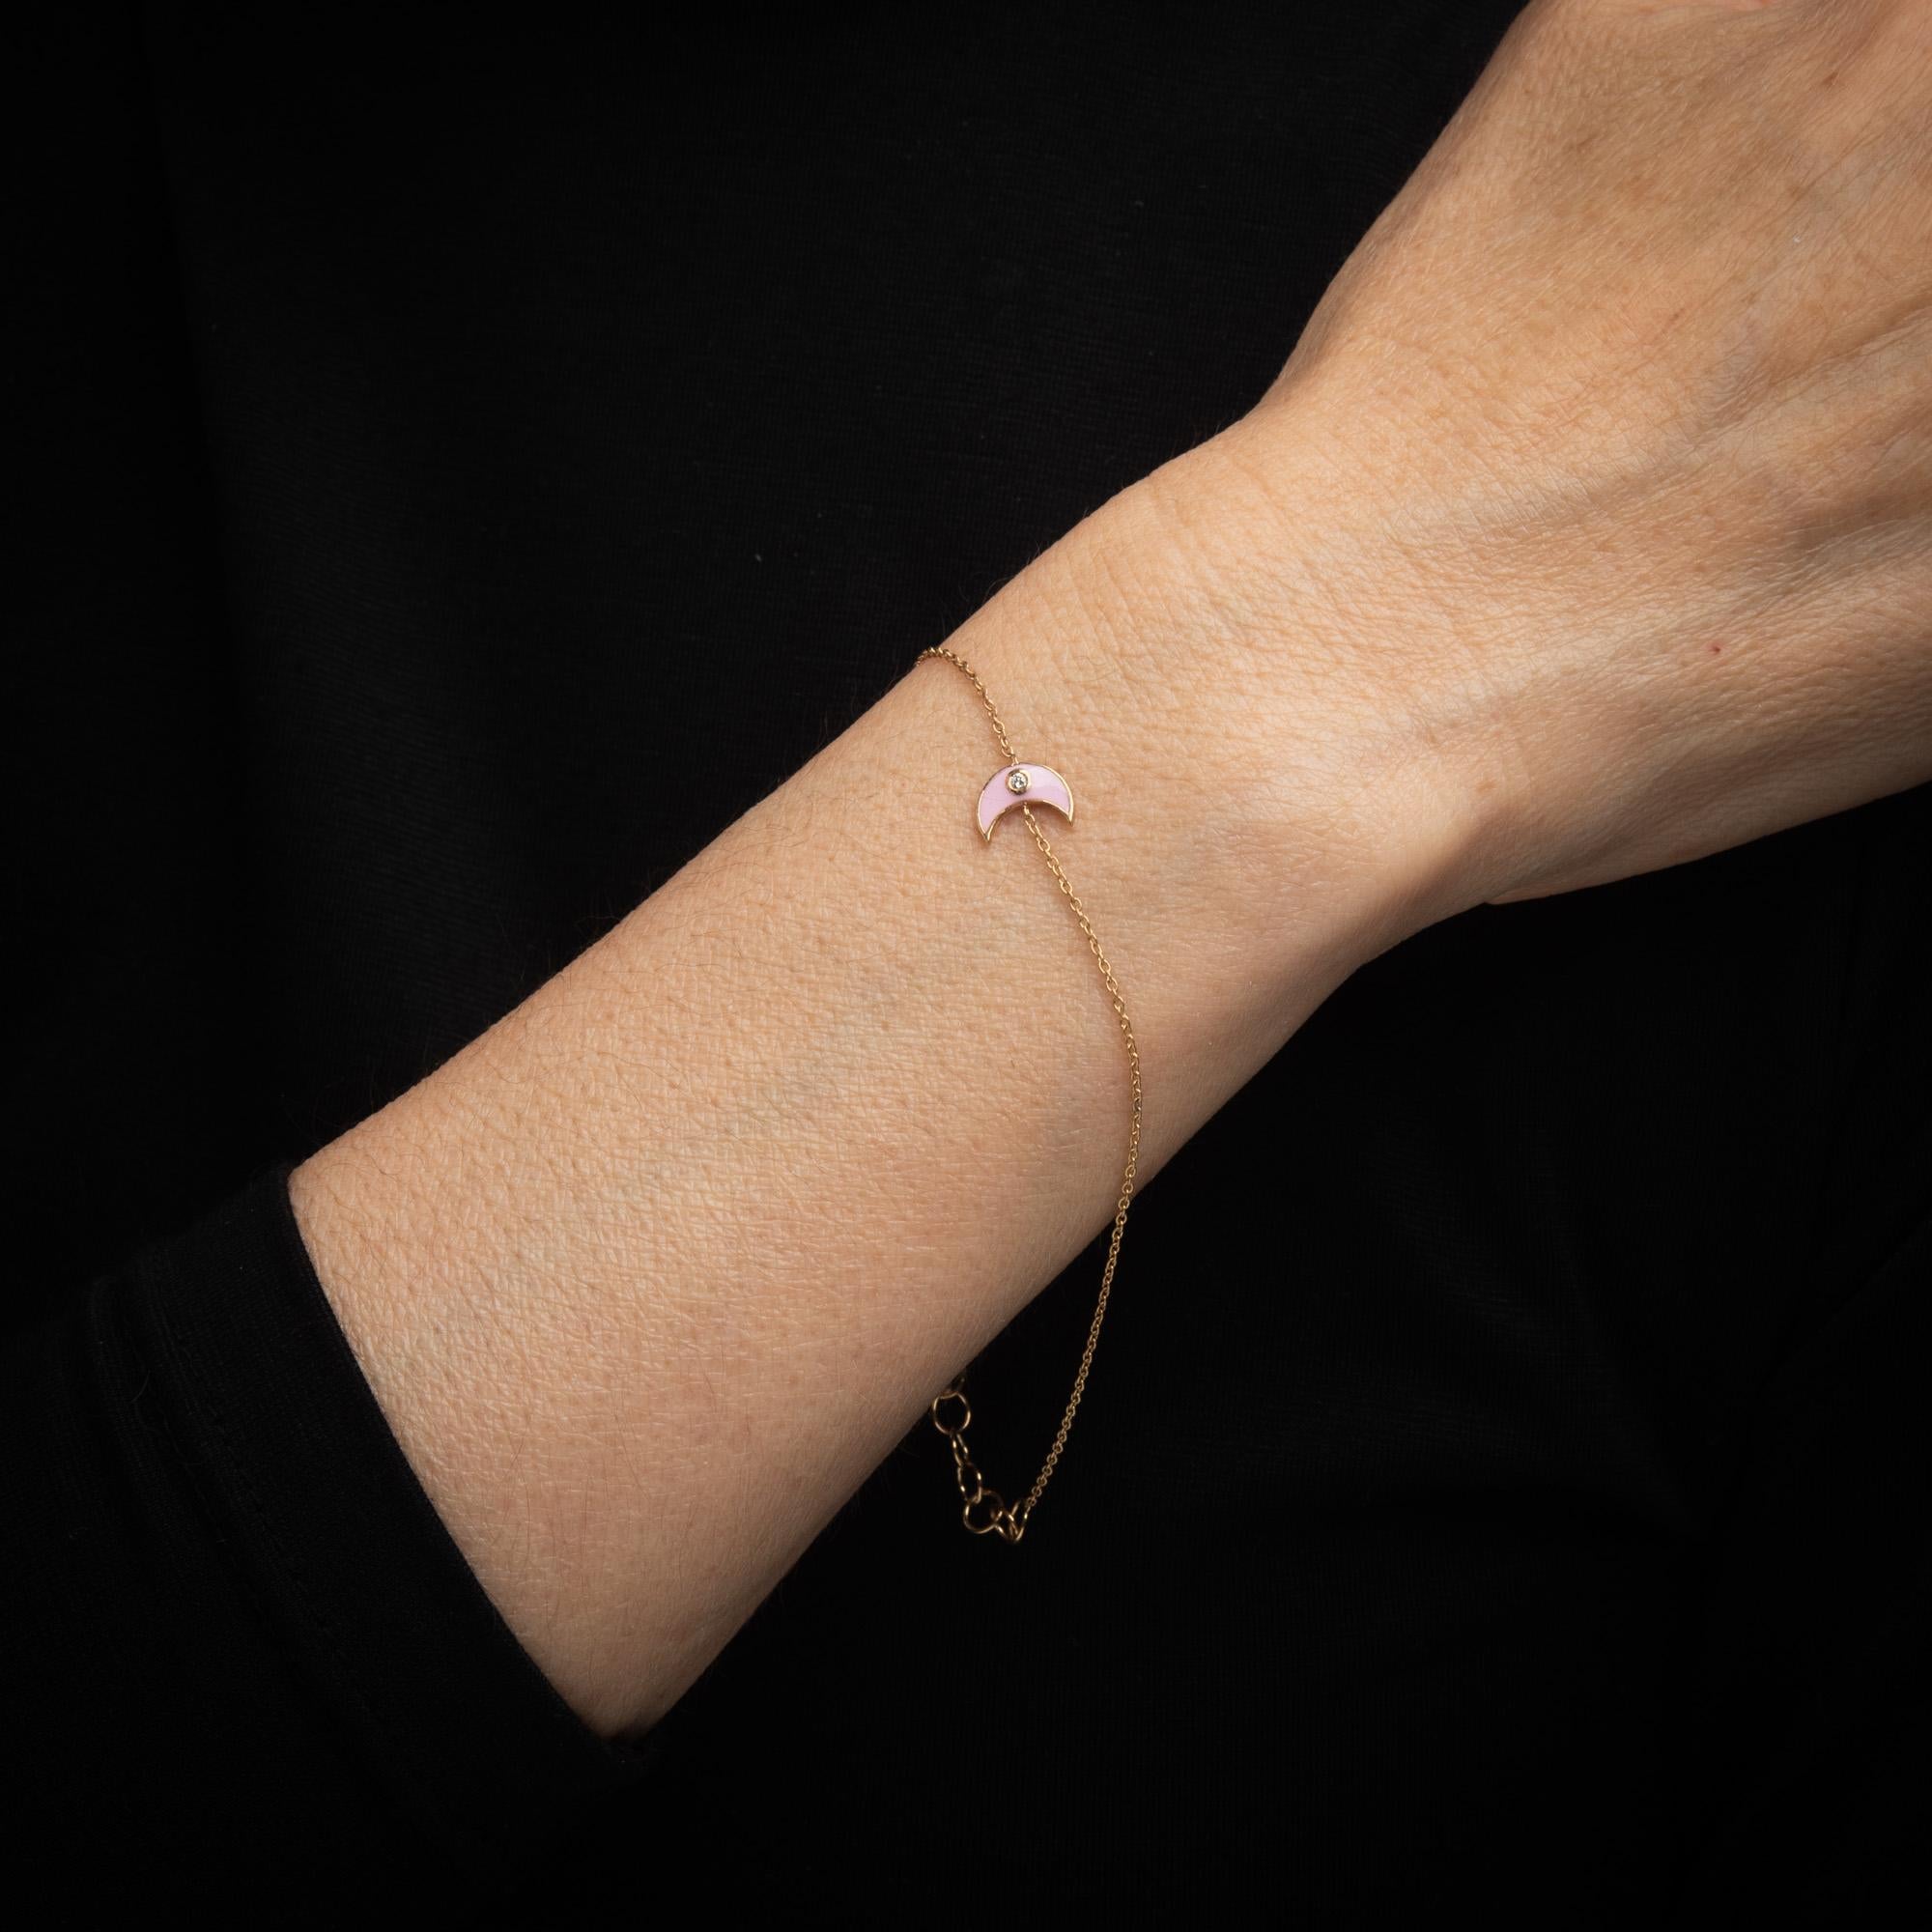 Bracelet en forme de croissant de lune et diamants finement détaillés, réalisés en or jaune 14k. 

Un diamant estimé à 0,02 carat est serti dans la monture (couleur estimée H-I et pureté SI1).     

Le croissant de lune, de couleur rose pâle, est